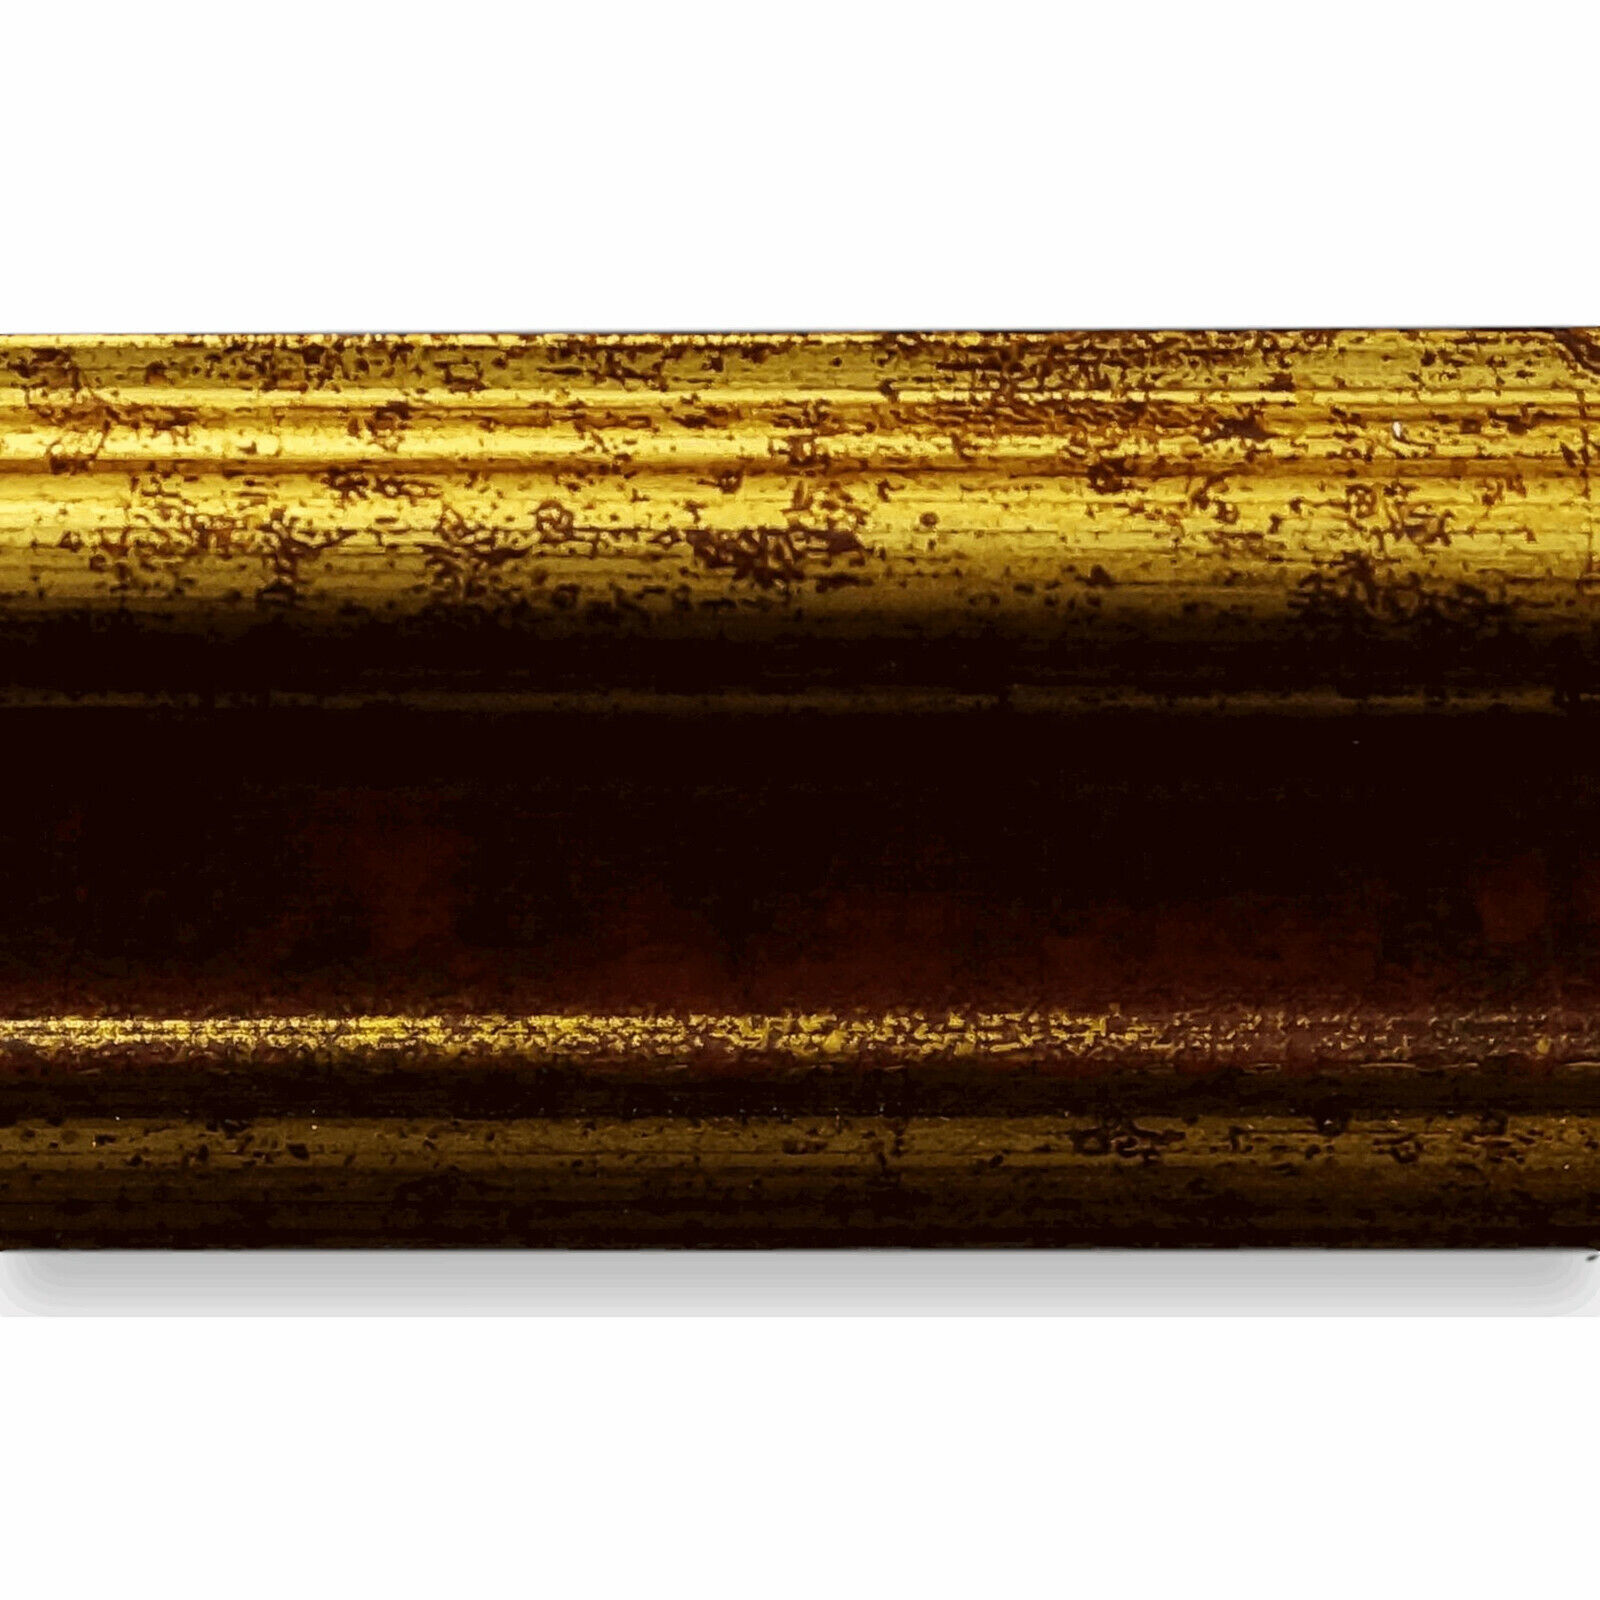 NEU alle Größen Bilderrahmen Braun Gold Antik Vintage Retro Bari 4,4 